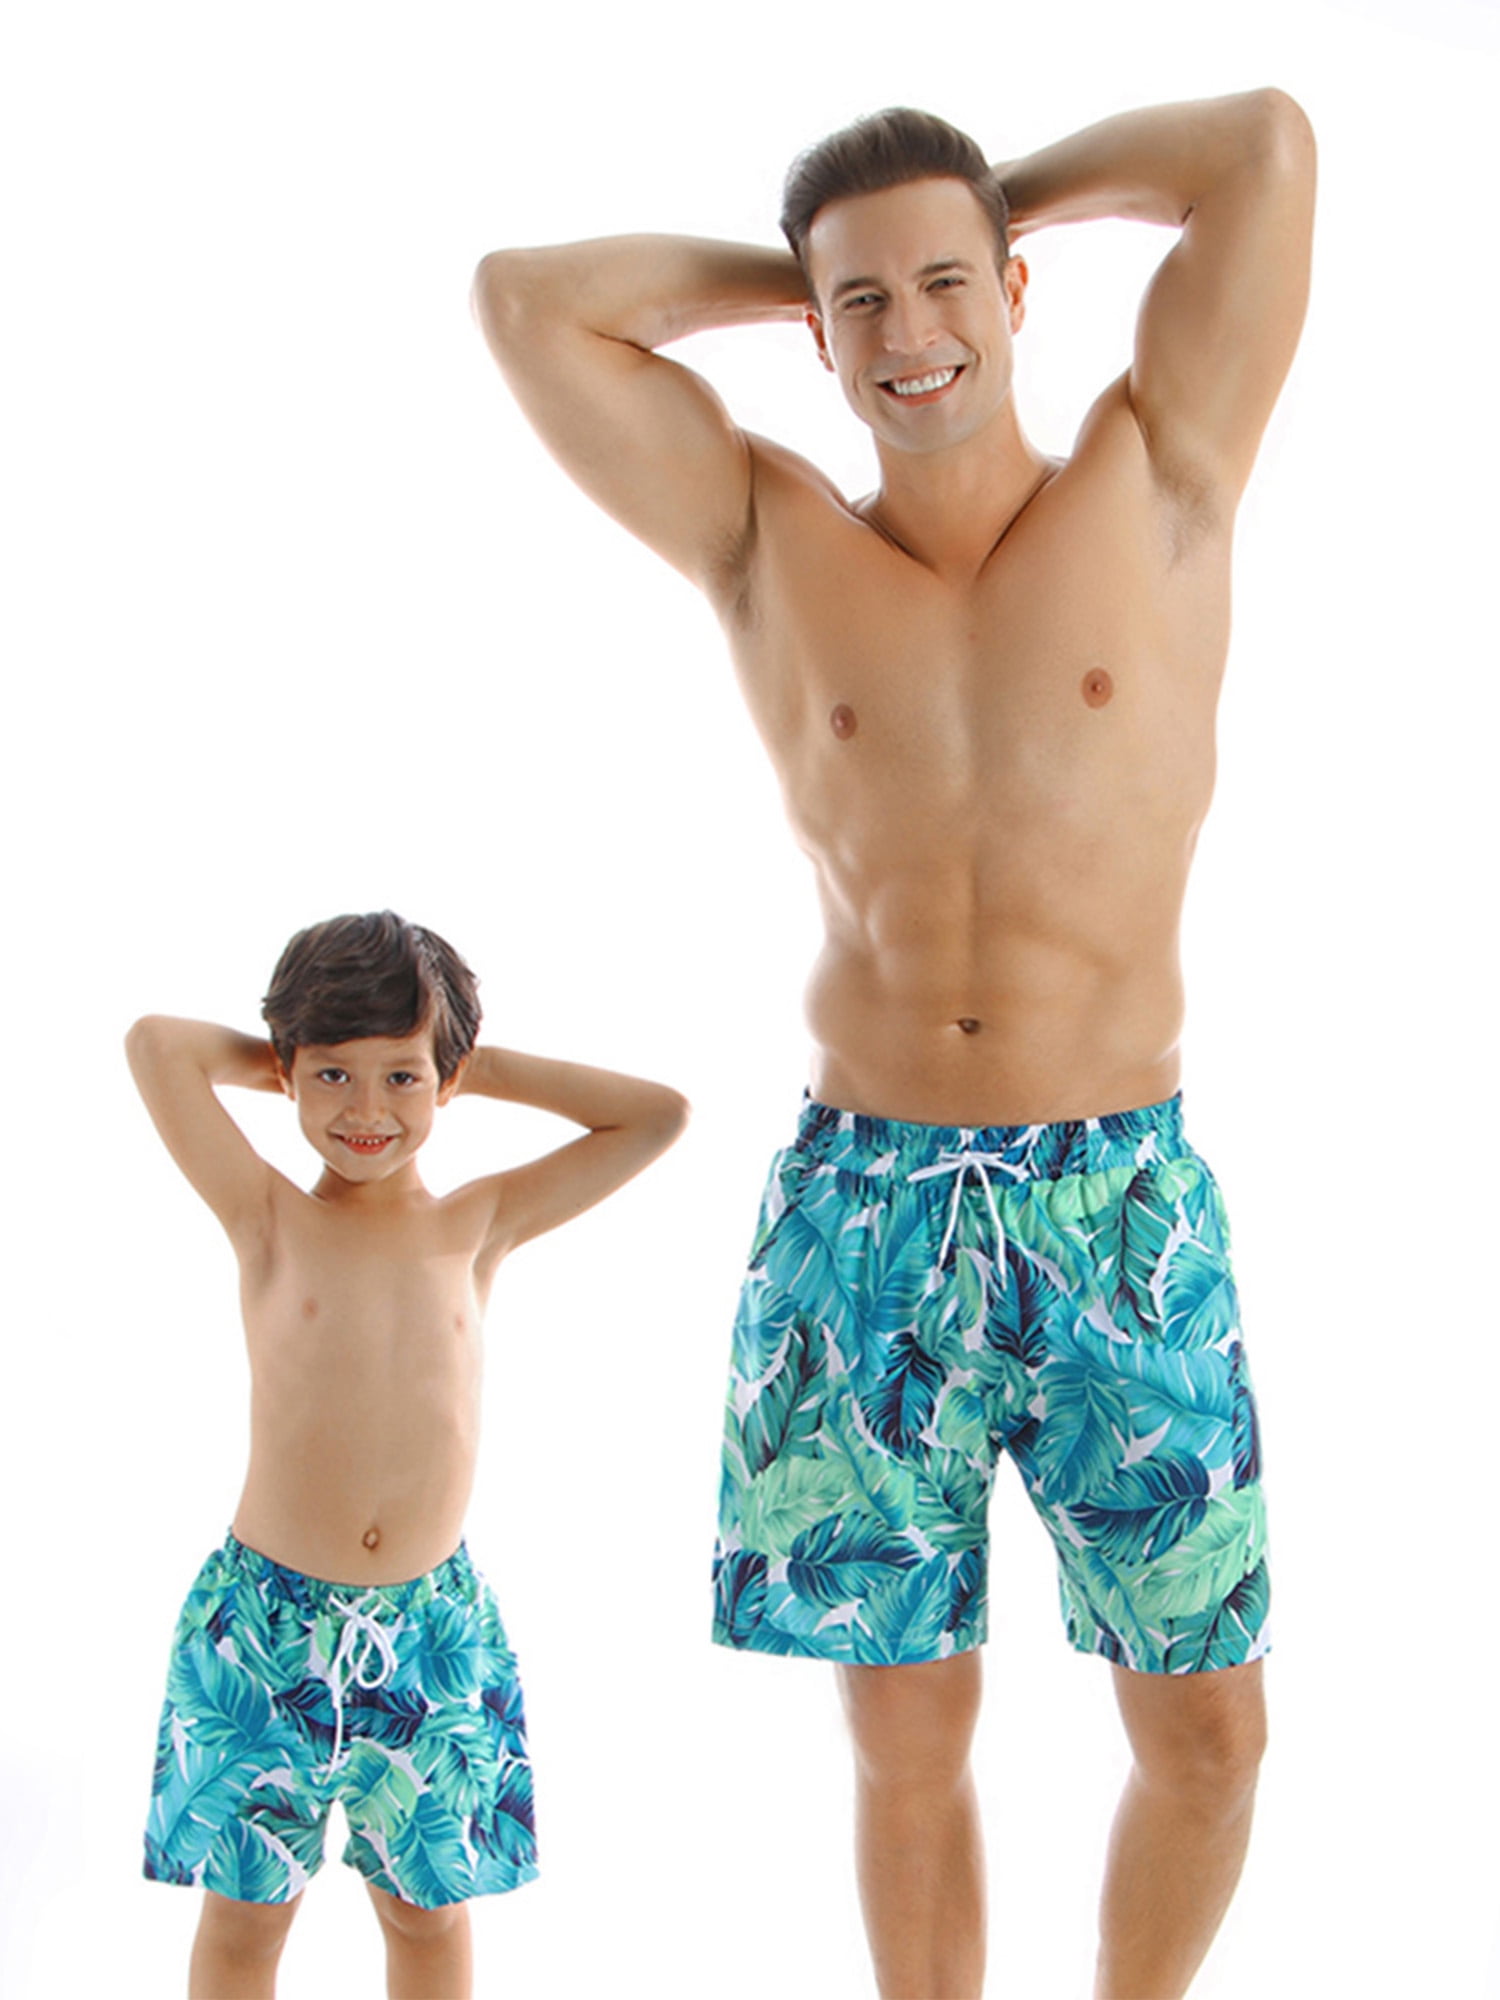 Men Boy Swim Trunks Tie Dye Turtle Beach Bathing Suit Sports Shorts Swimwear Underpants Quick Dry 